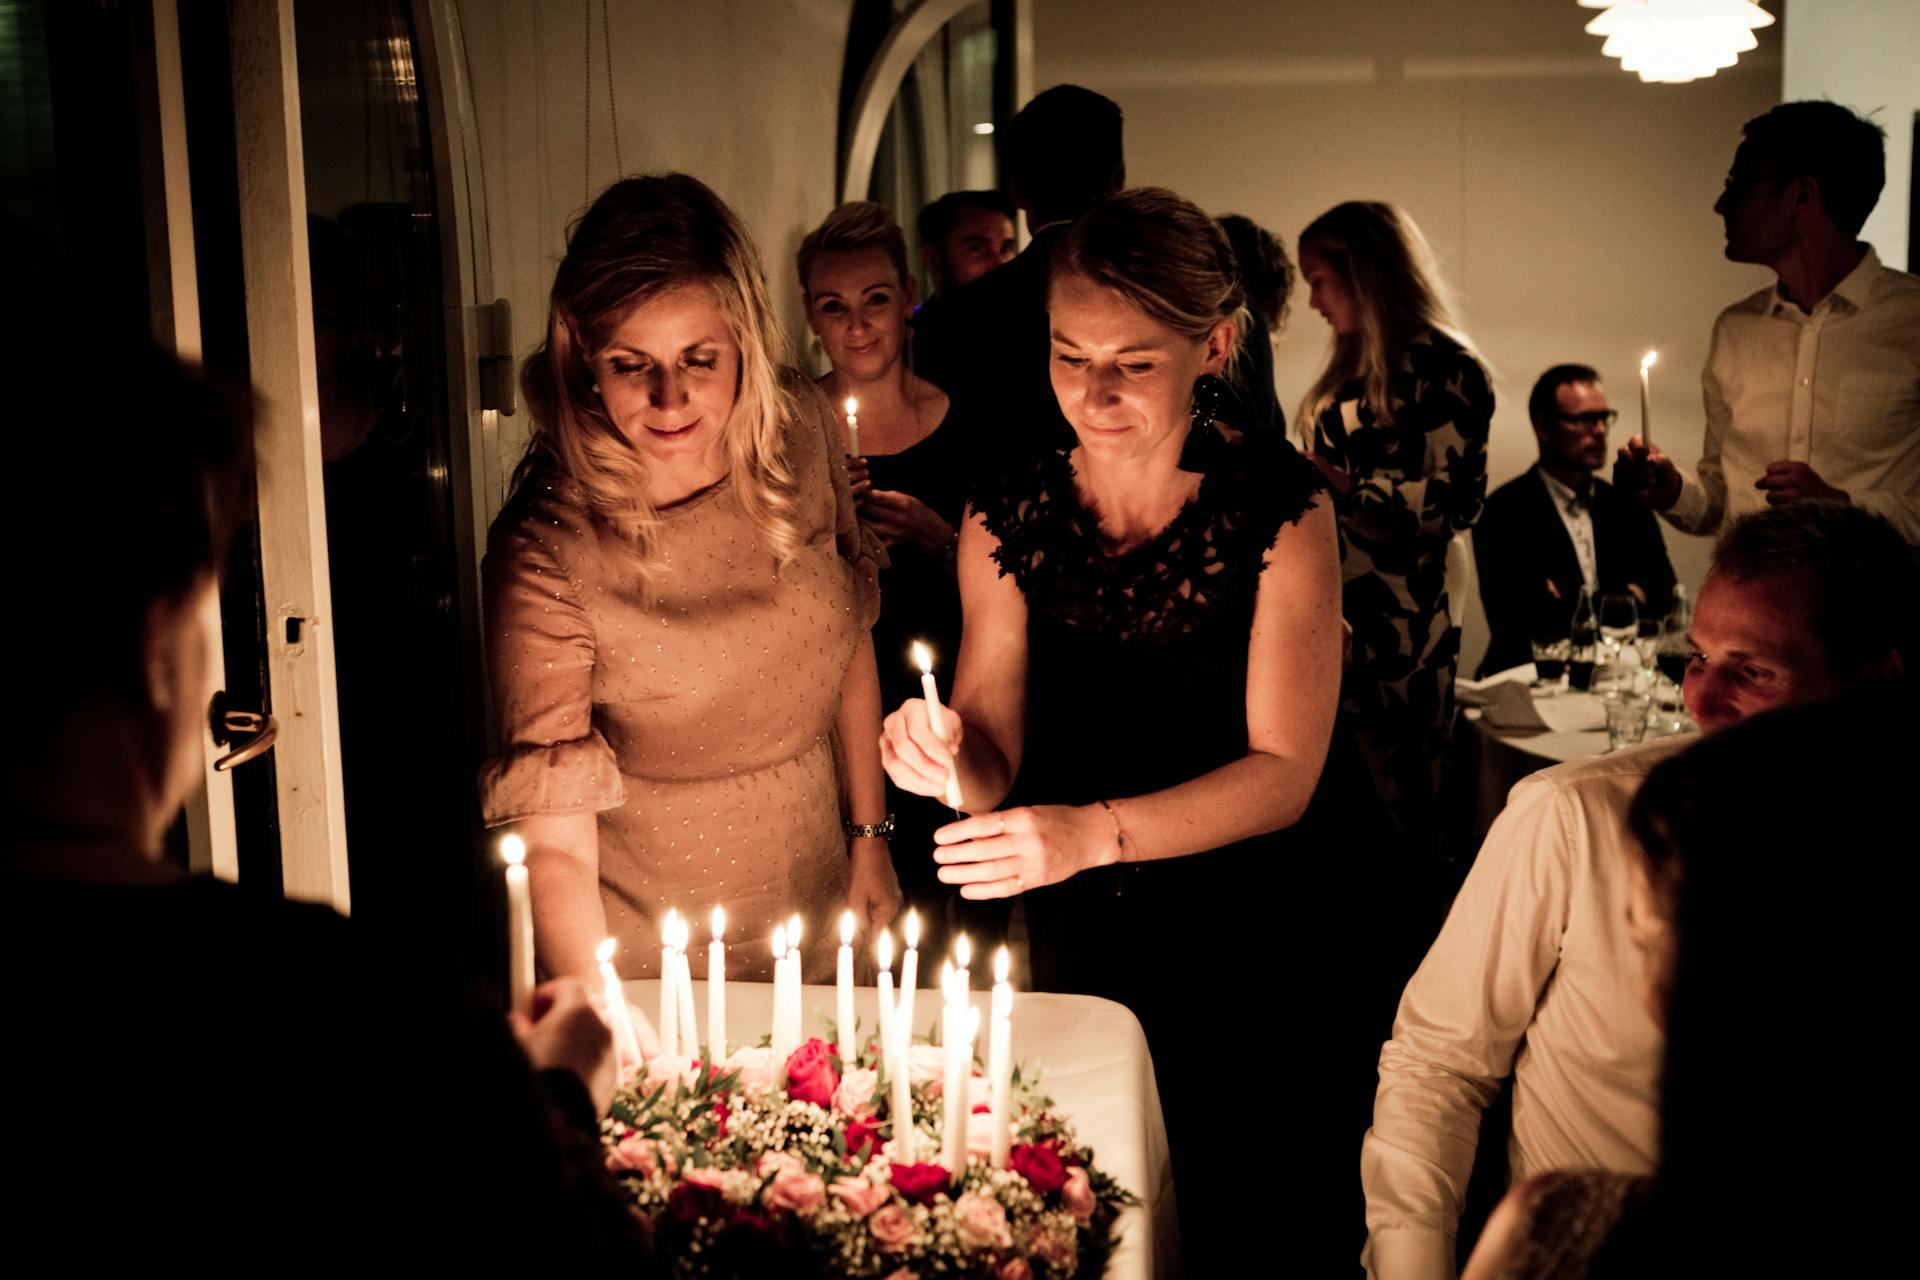 Dos mujeres sosteniendo velas en una fiesta de cumpleaños | Fuente: Pexels